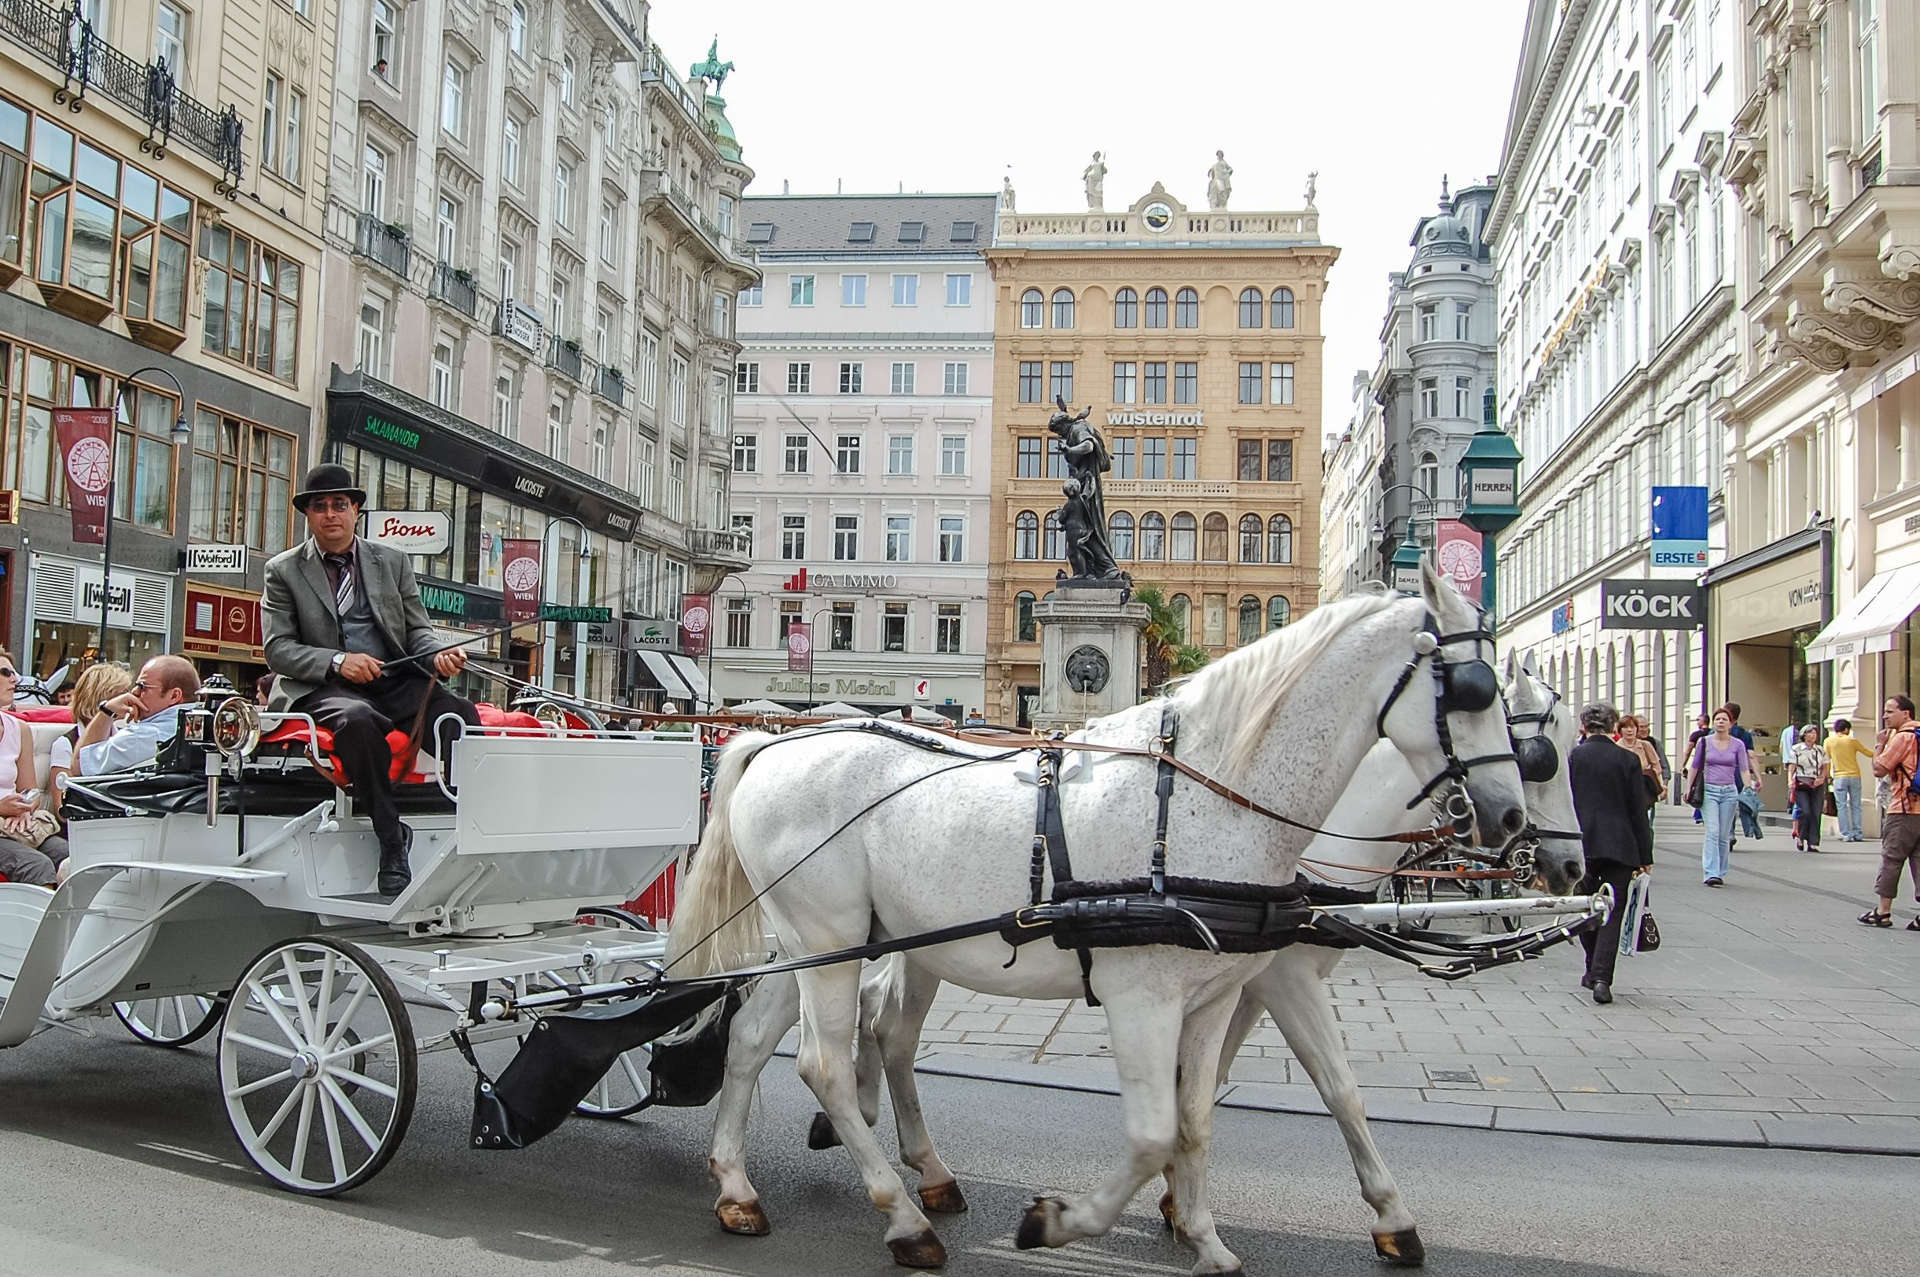 Best of Austria 1 - Vienna Horses